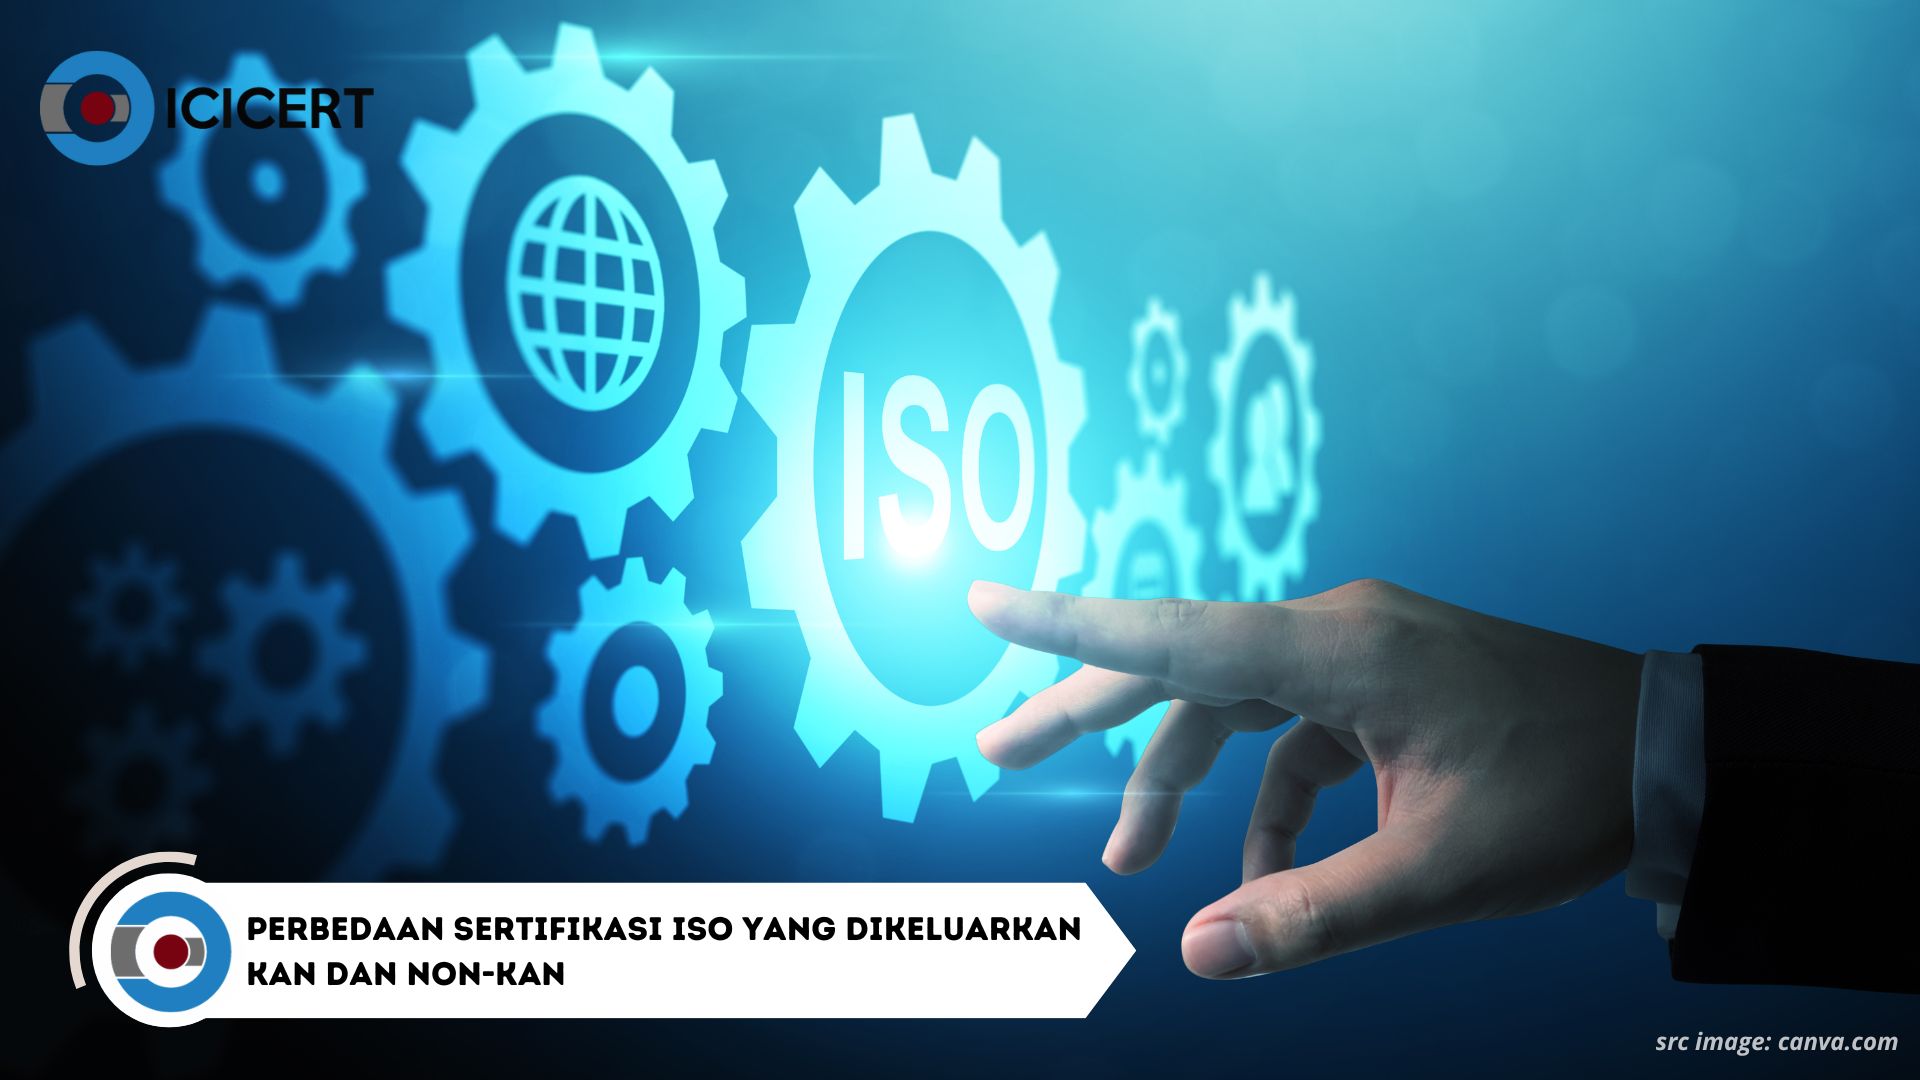 Inilah Perbedaan Sertifikasi ISO yang Dikeluarkan KAN dan Non-KAN